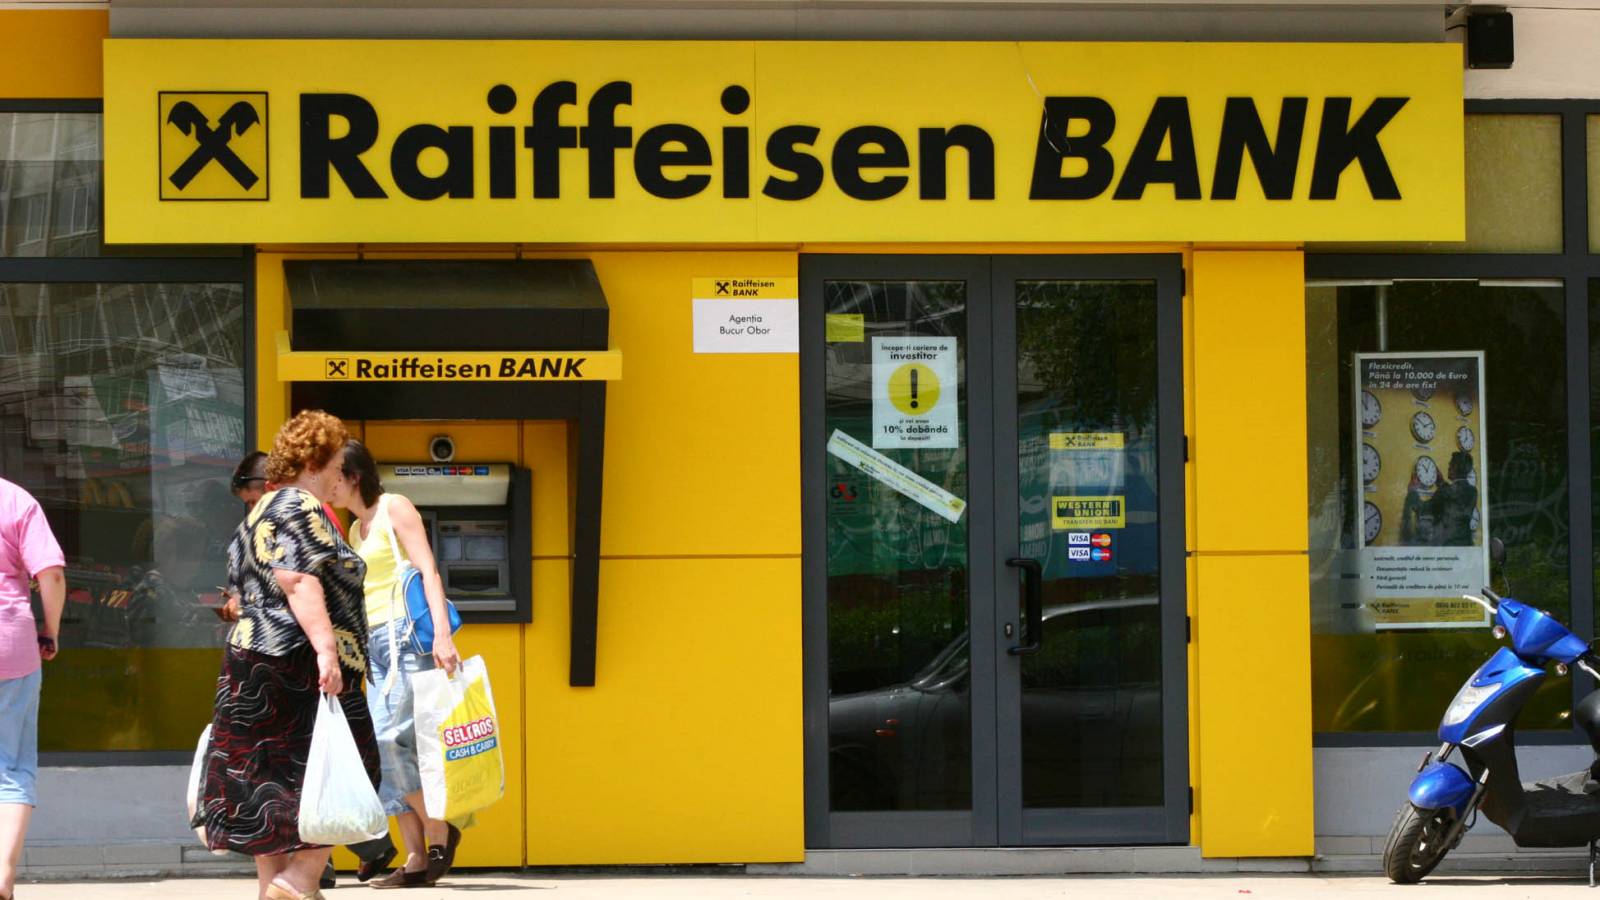 Wyjątek w Raiffeisen Banku